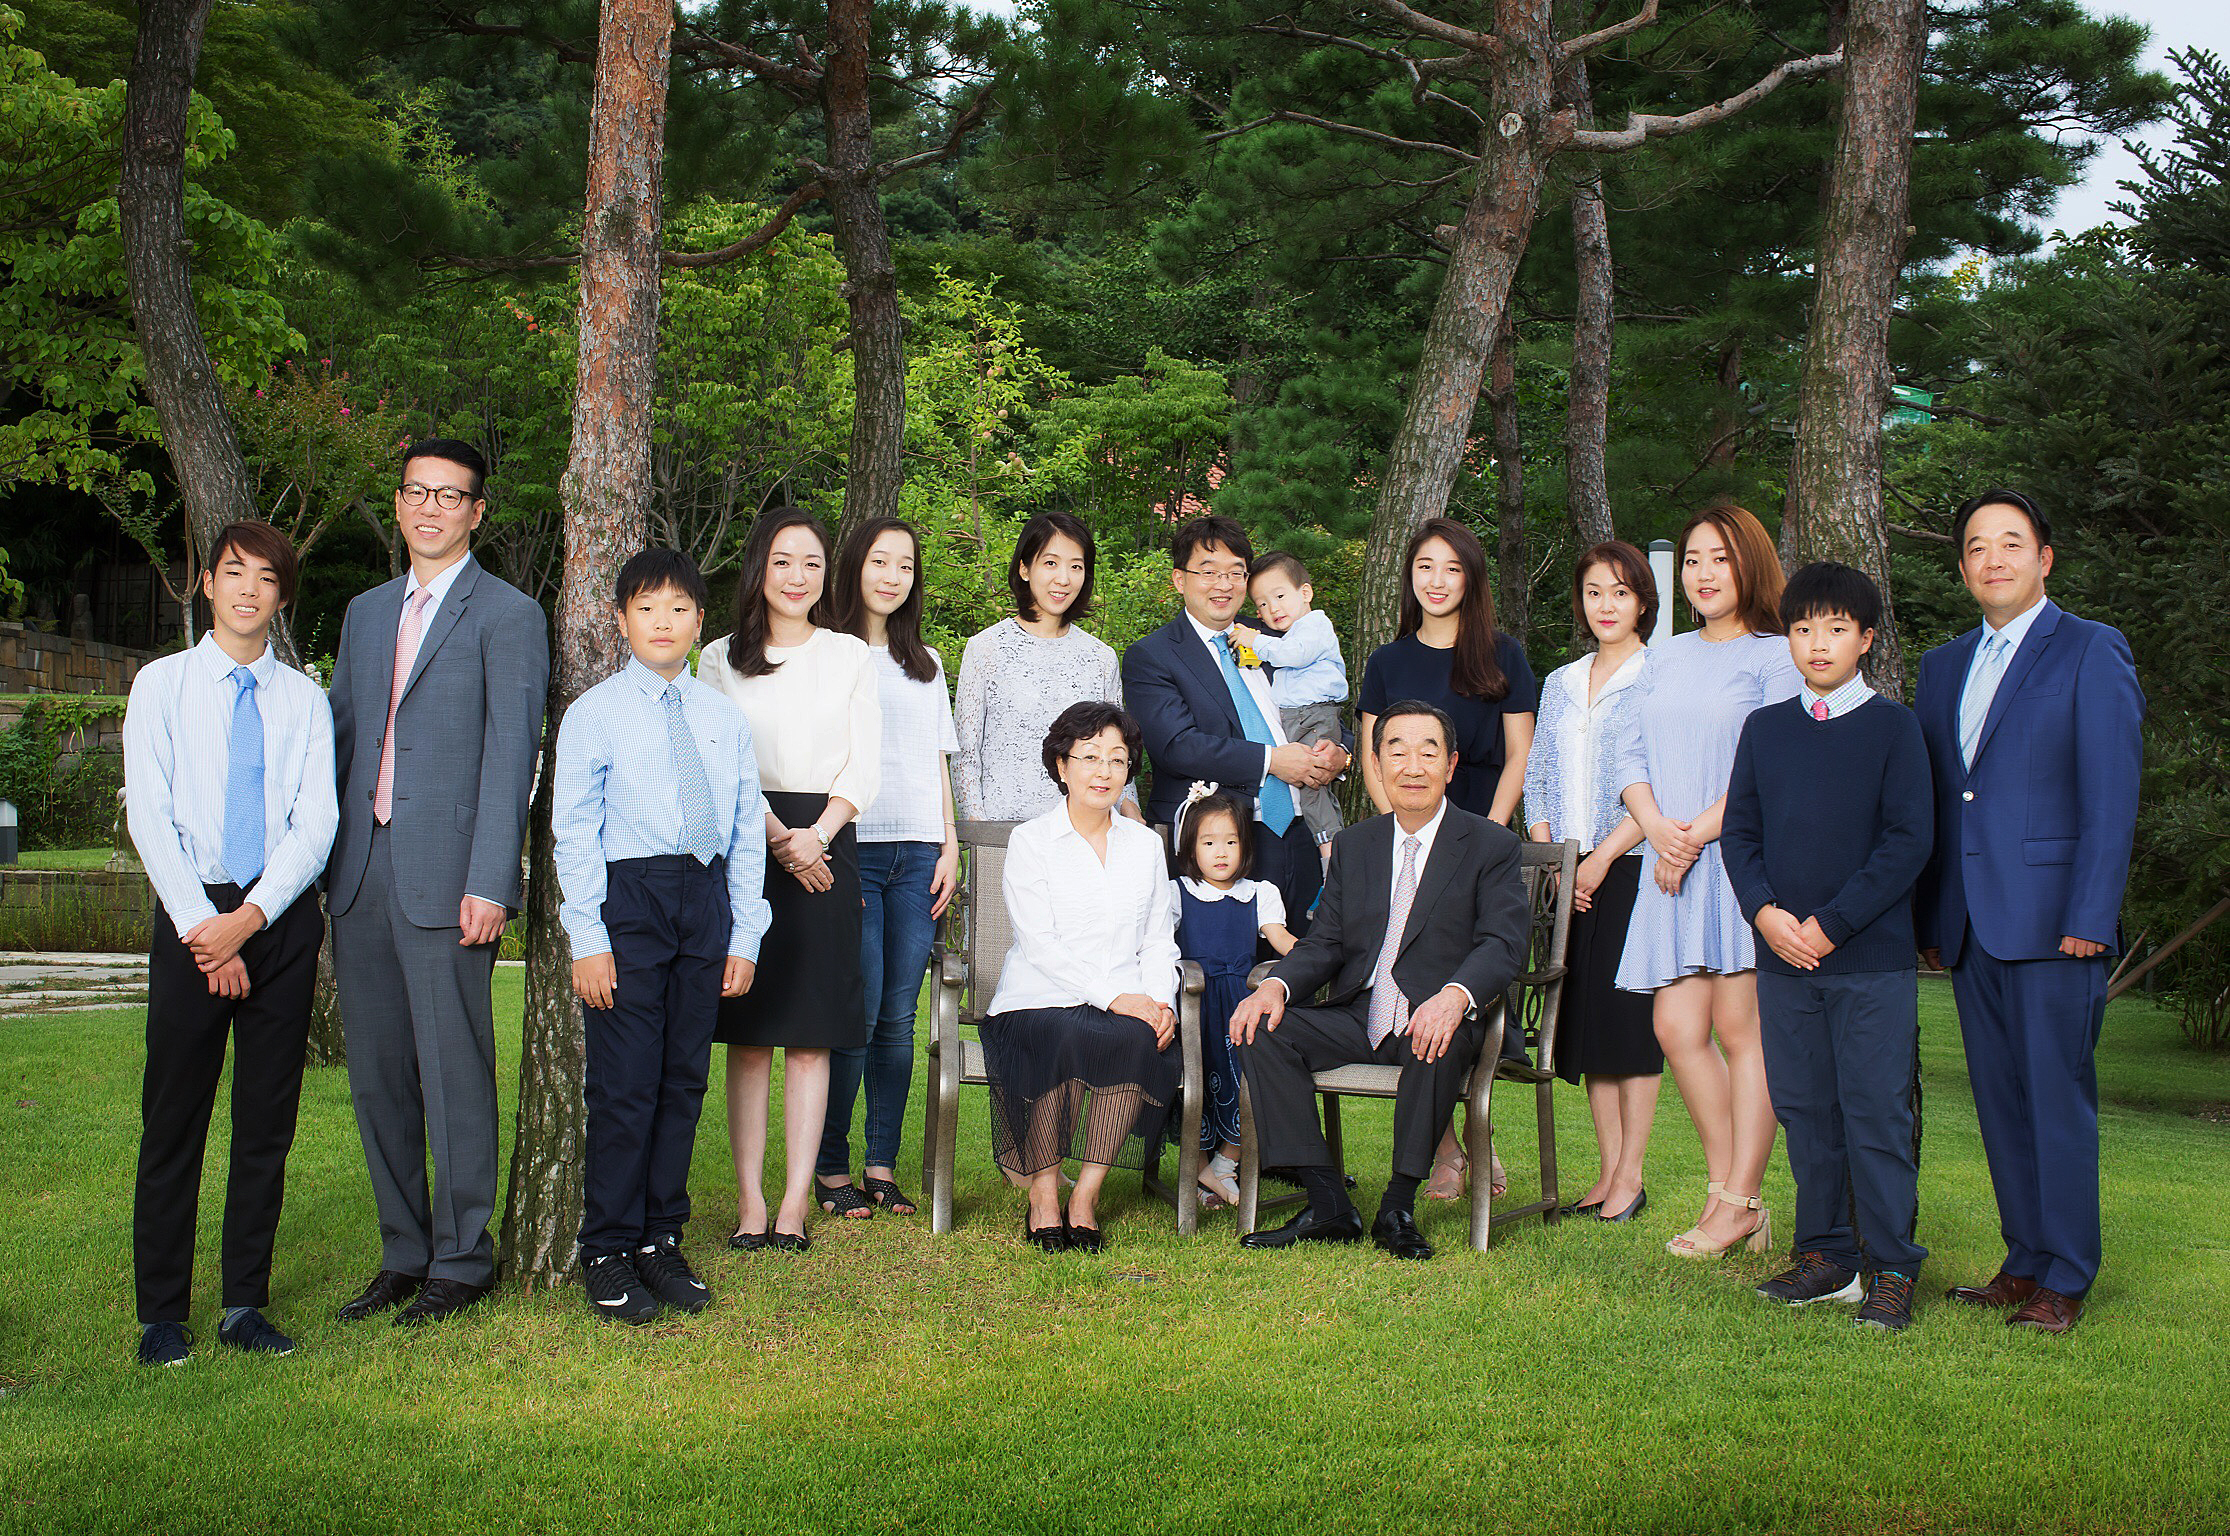 이우현(뒷줄 왼쪽에서 일곱번째) OCI부회장의 부모인 고 이수영(앞줄 오른쪽) 회장과 김경자(앞줄 왼쪽) 송암문화재단 이사장의 결혼 50주년에 찍은 가족 사진.